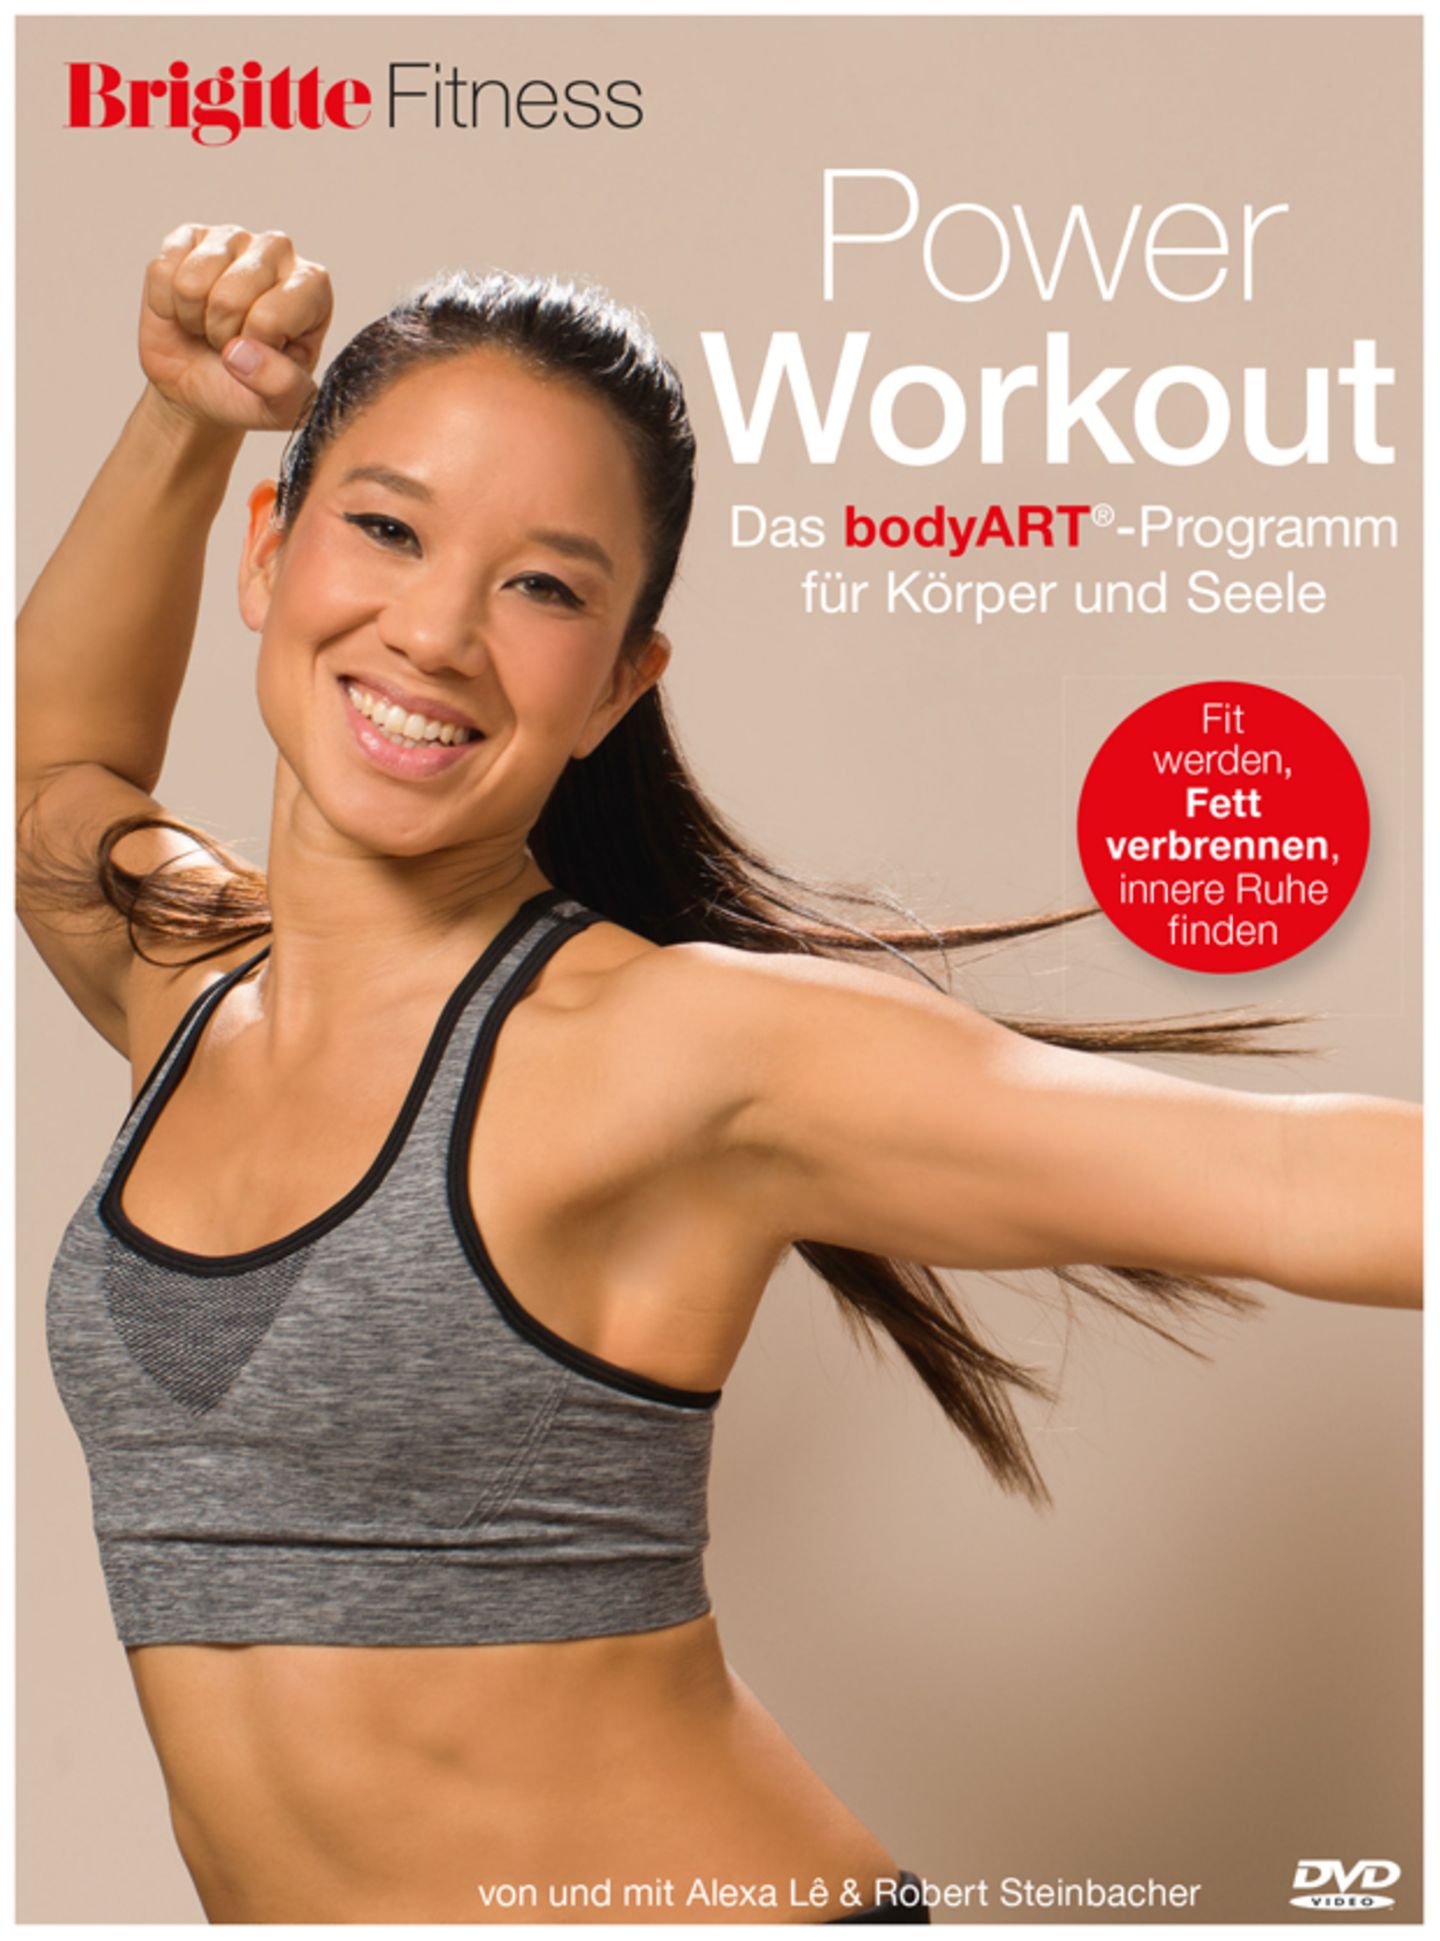 Die neue BRIGITTE Fitness-DVD: Power Workout